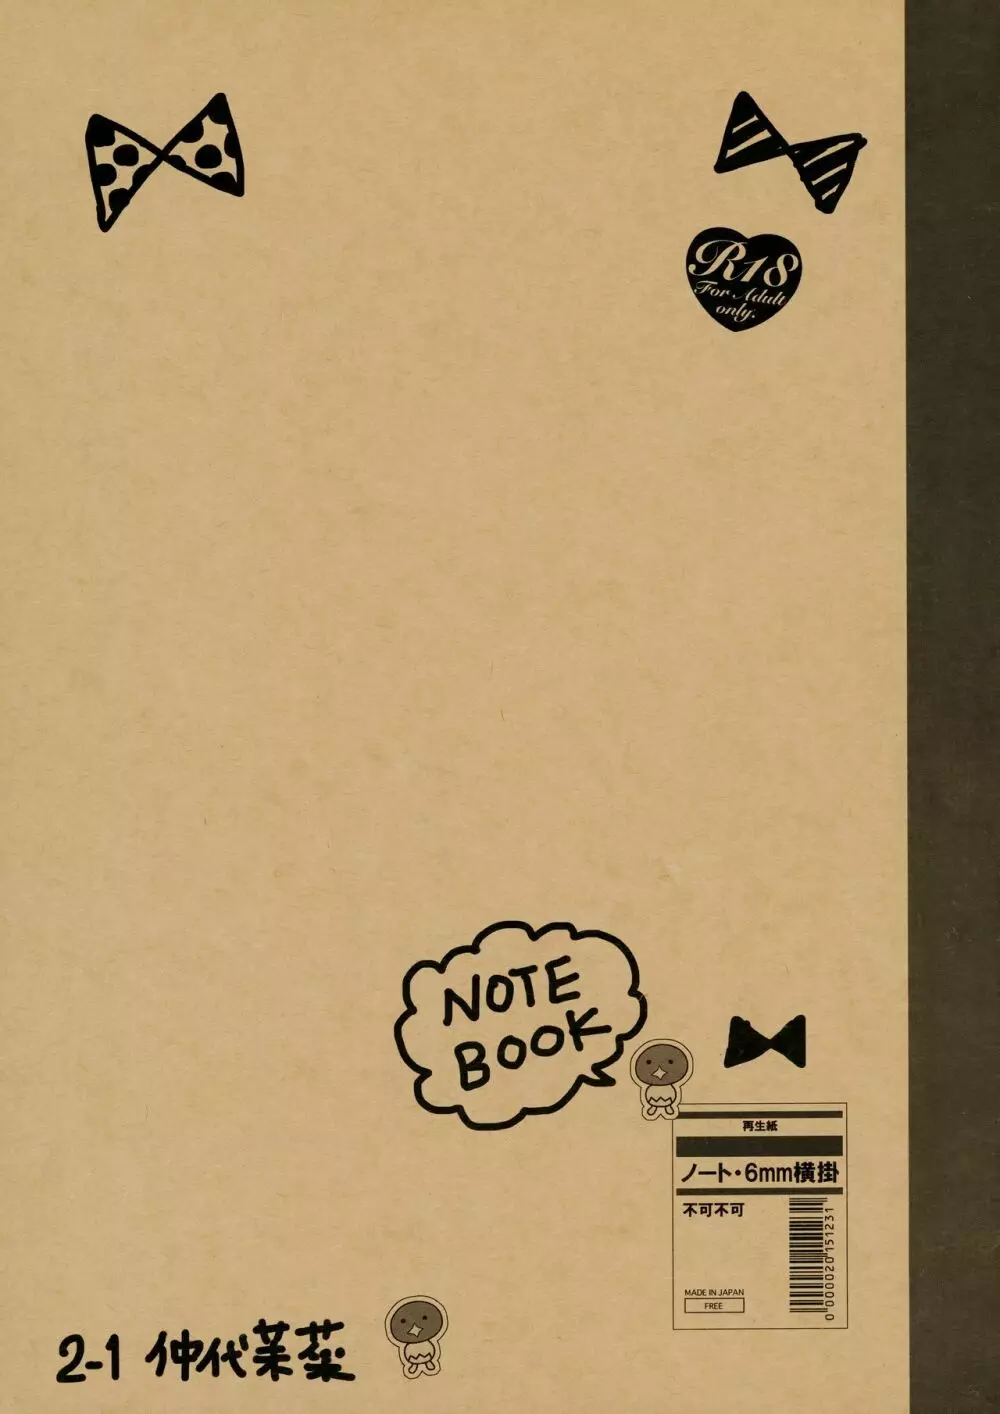 Notebook 2-1 仲代茉菜